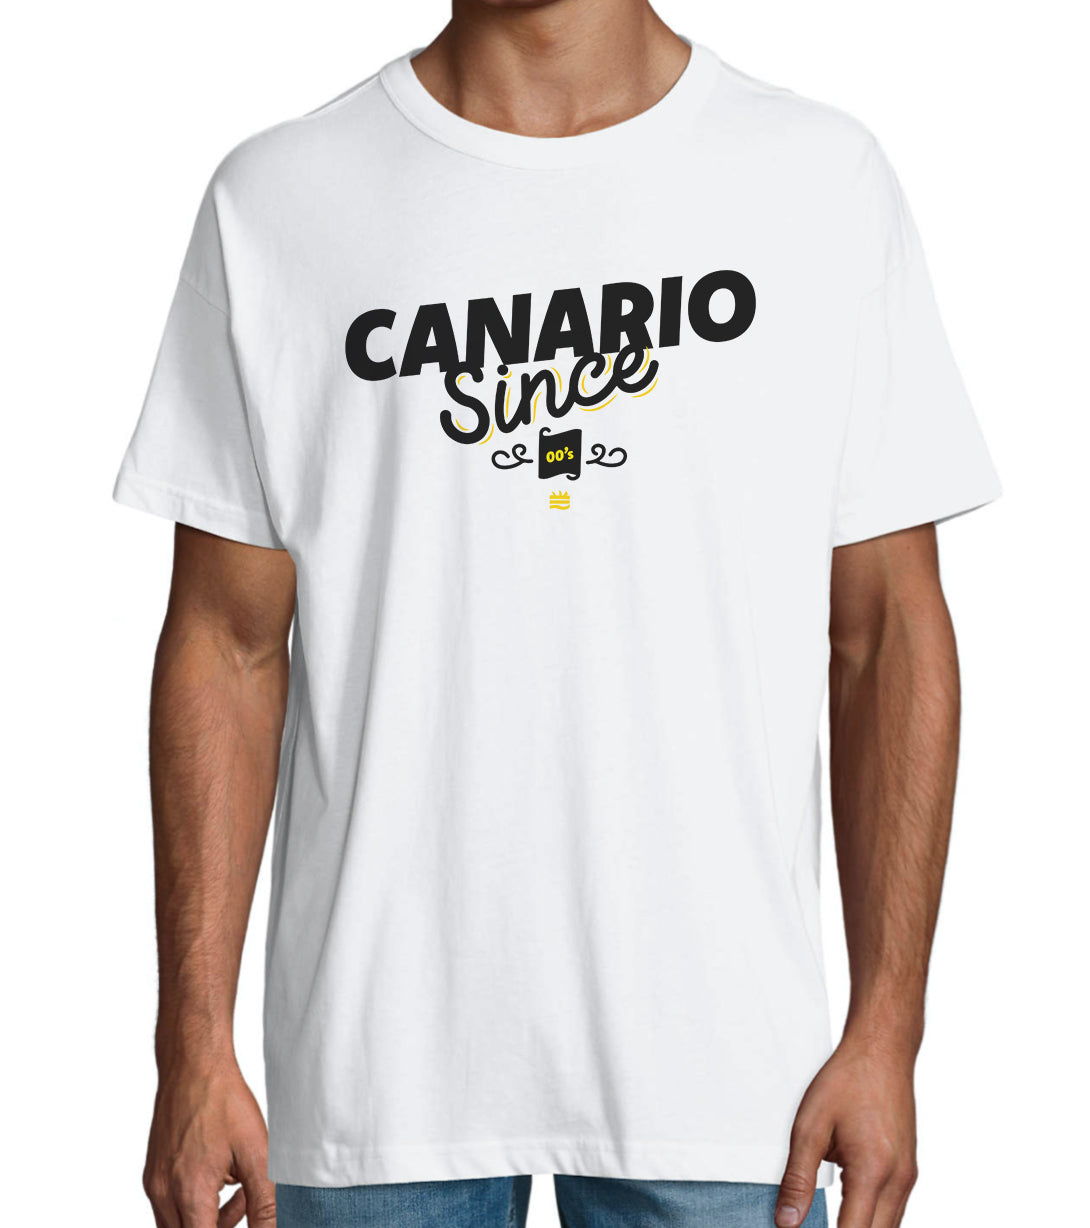 Camiseta oversize ''Canario Since 80s, 90s, 00s''